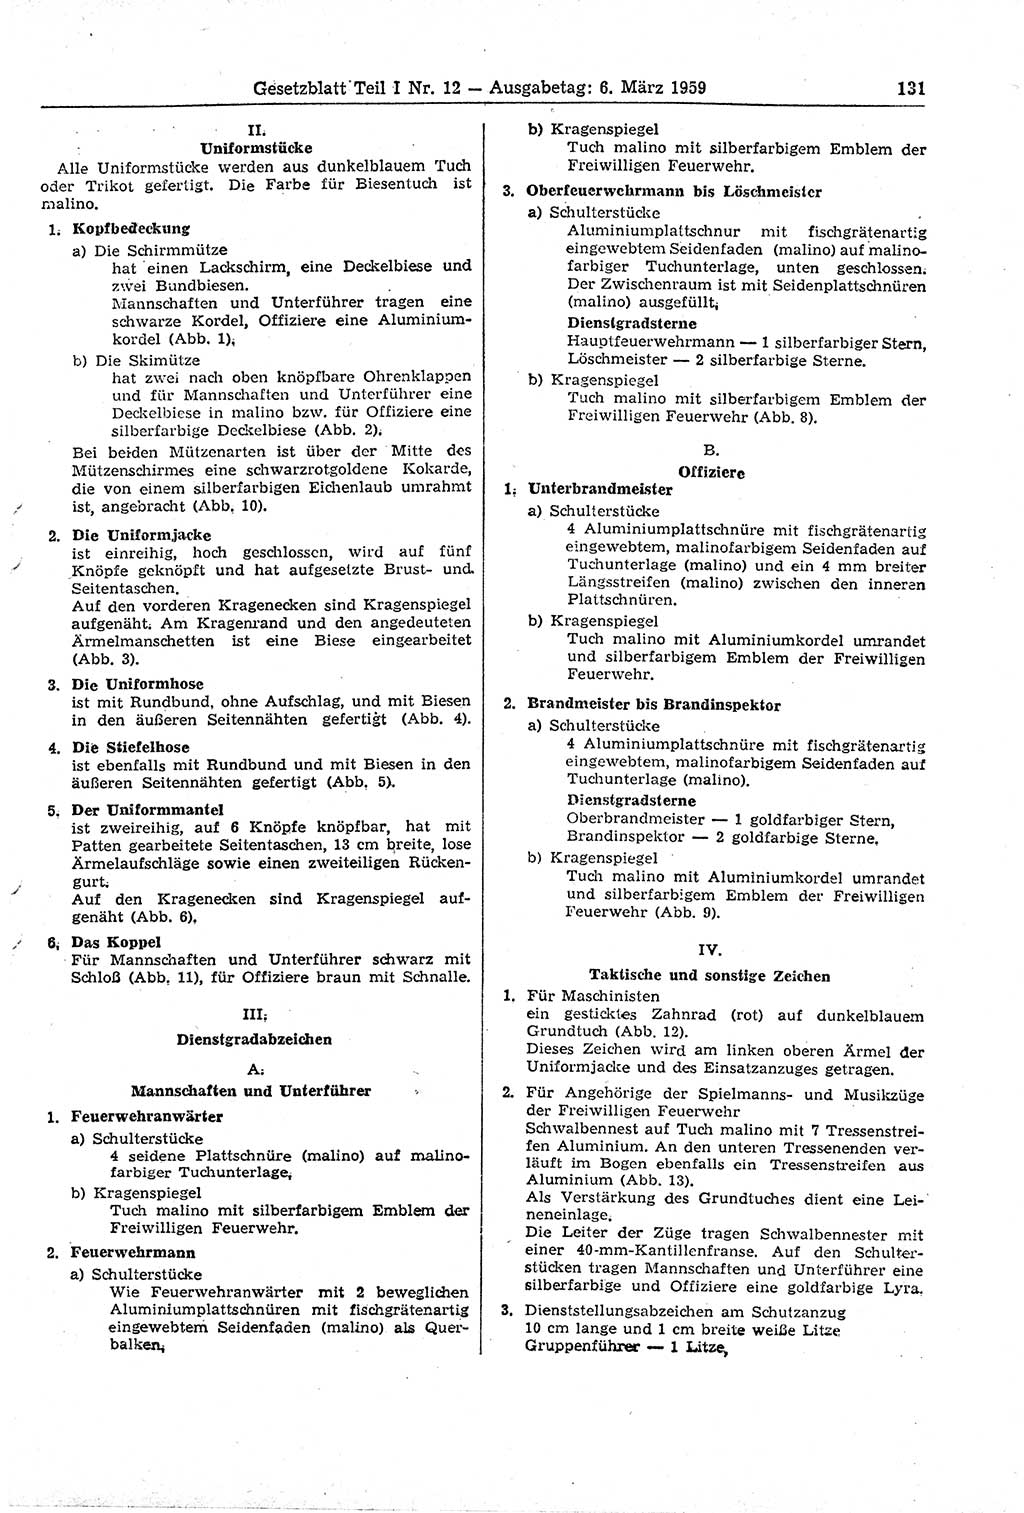 Gesetzblatt (GBl.) der Deutschen Demokratischen Republik (DDR) Teil Ⅰ 1959, Seite 131 (GBl. DDR Ⅰ 1959, S. 131)